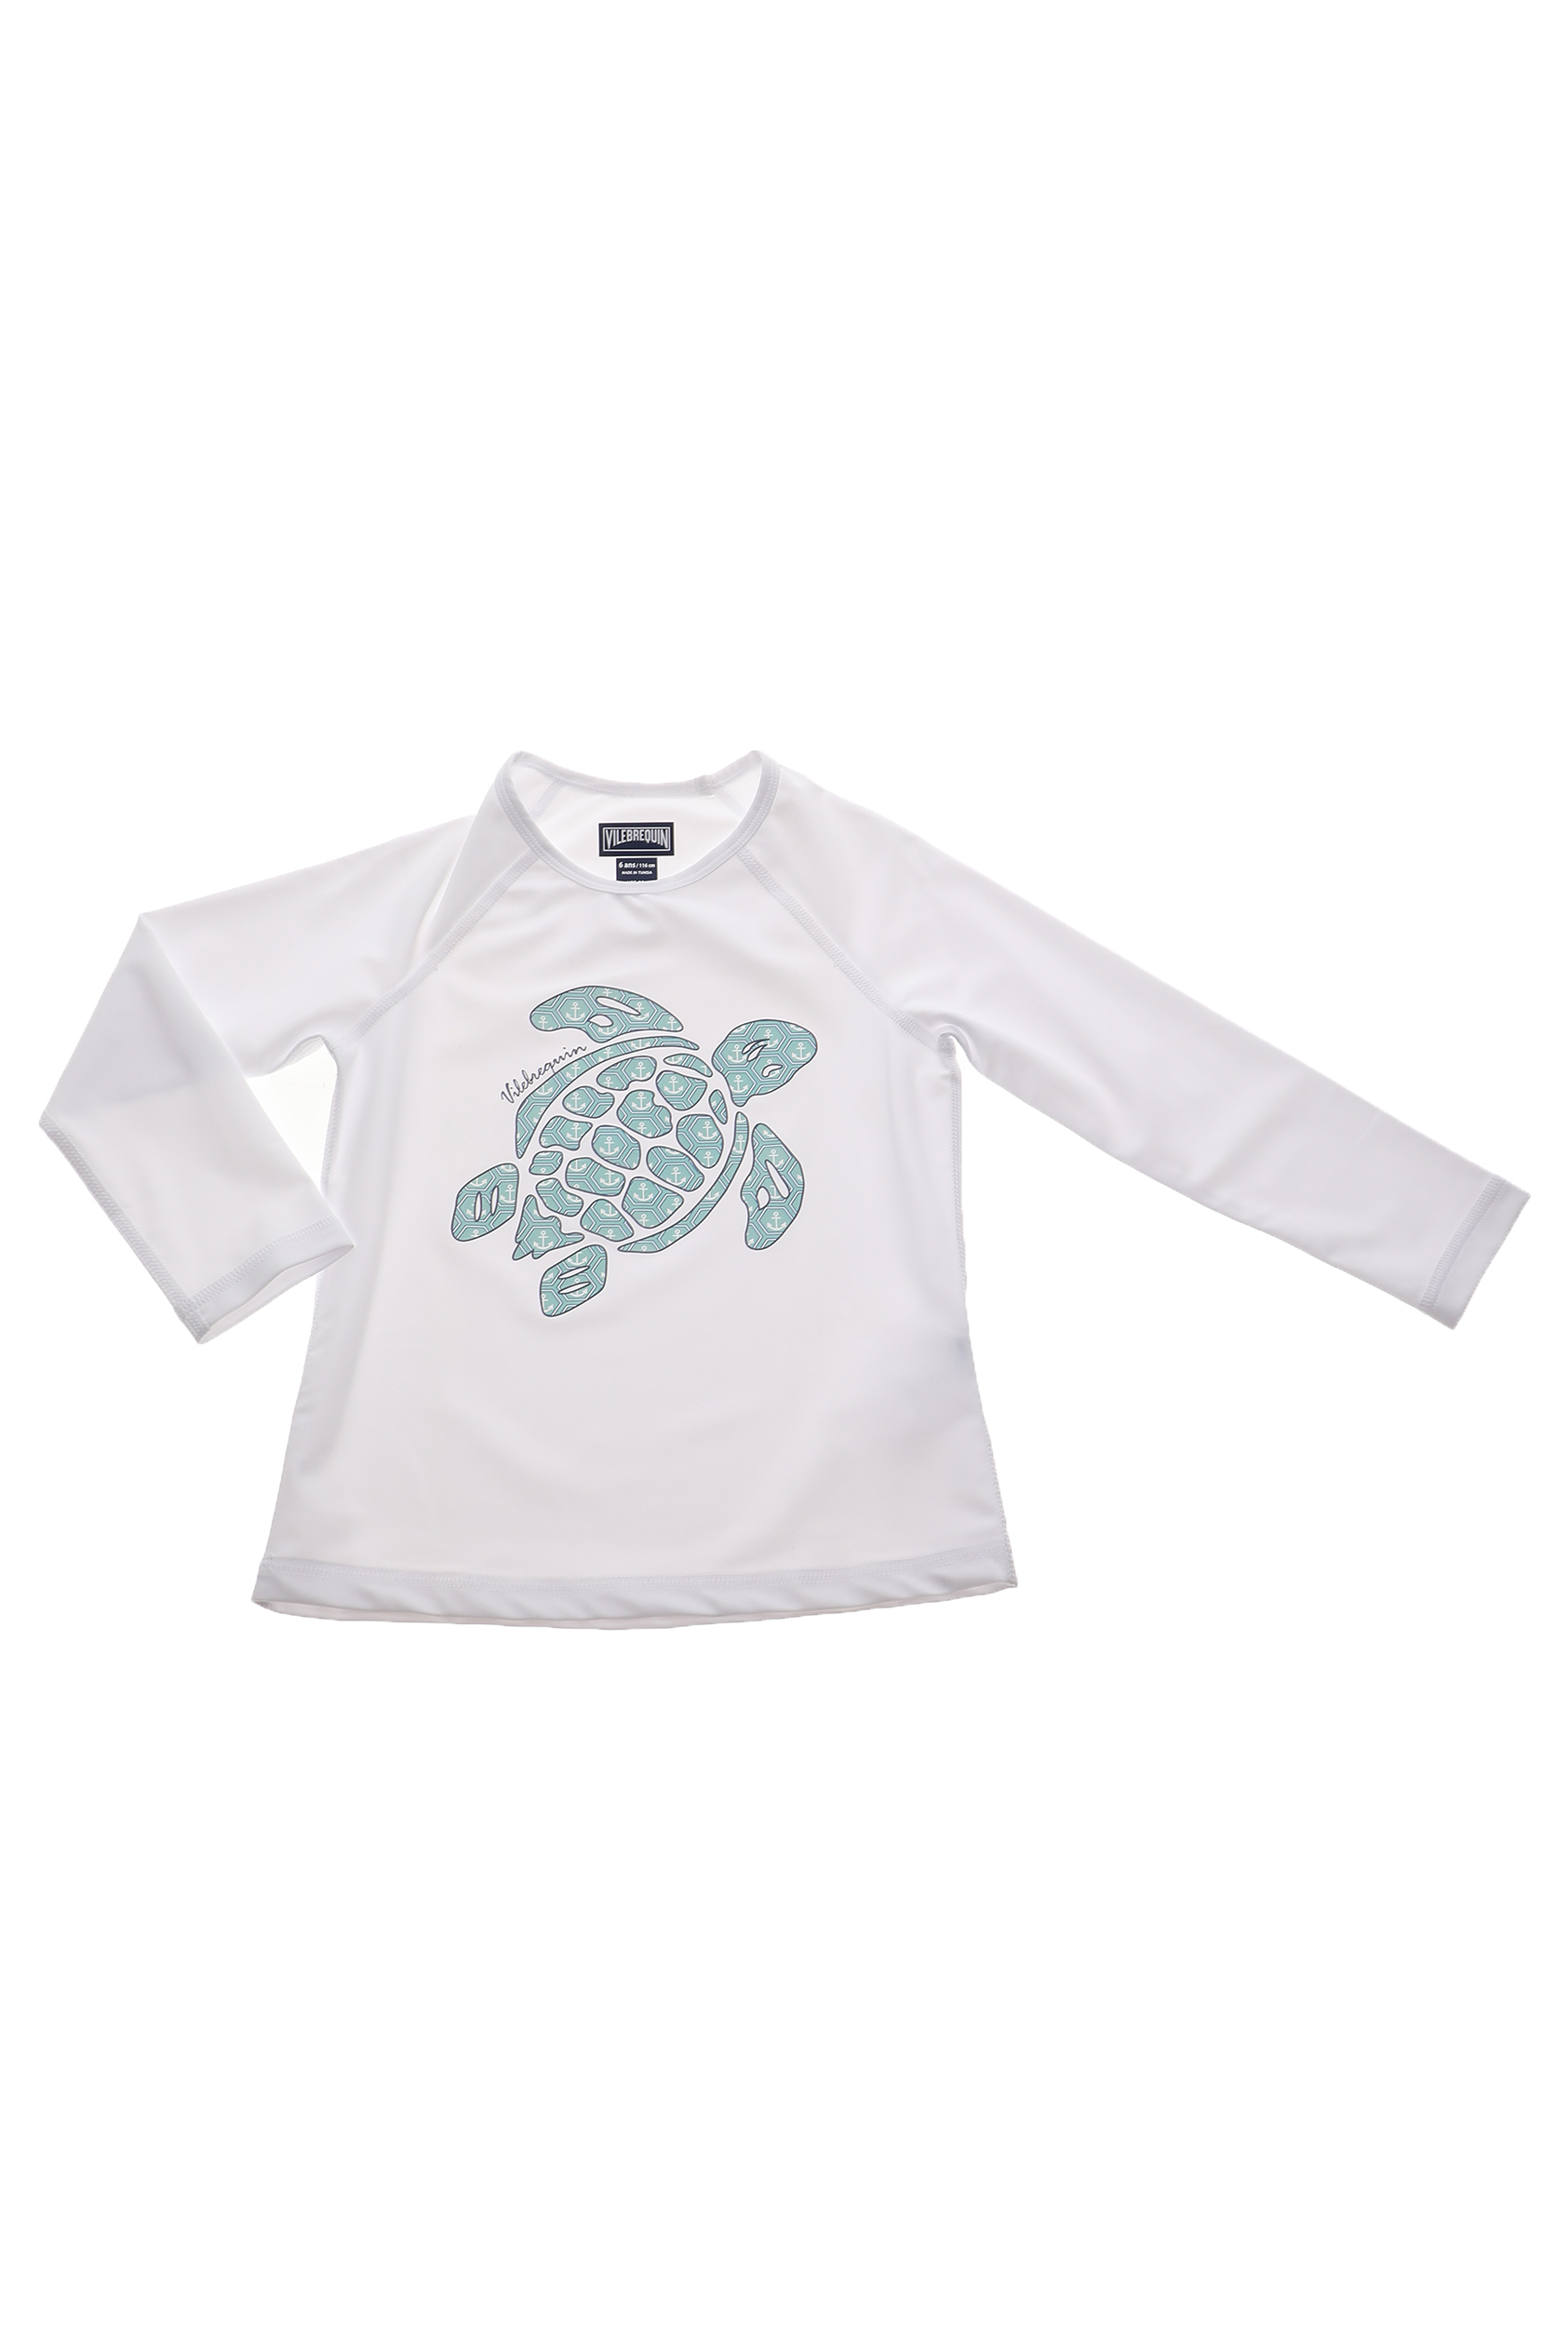 Παιδικά/Girls/Ρούχα/Μαγιό VILEBREQUIN - Unisex παιδικό t-shirt μαγιό VILEBREQUIN GLASSY λευκό